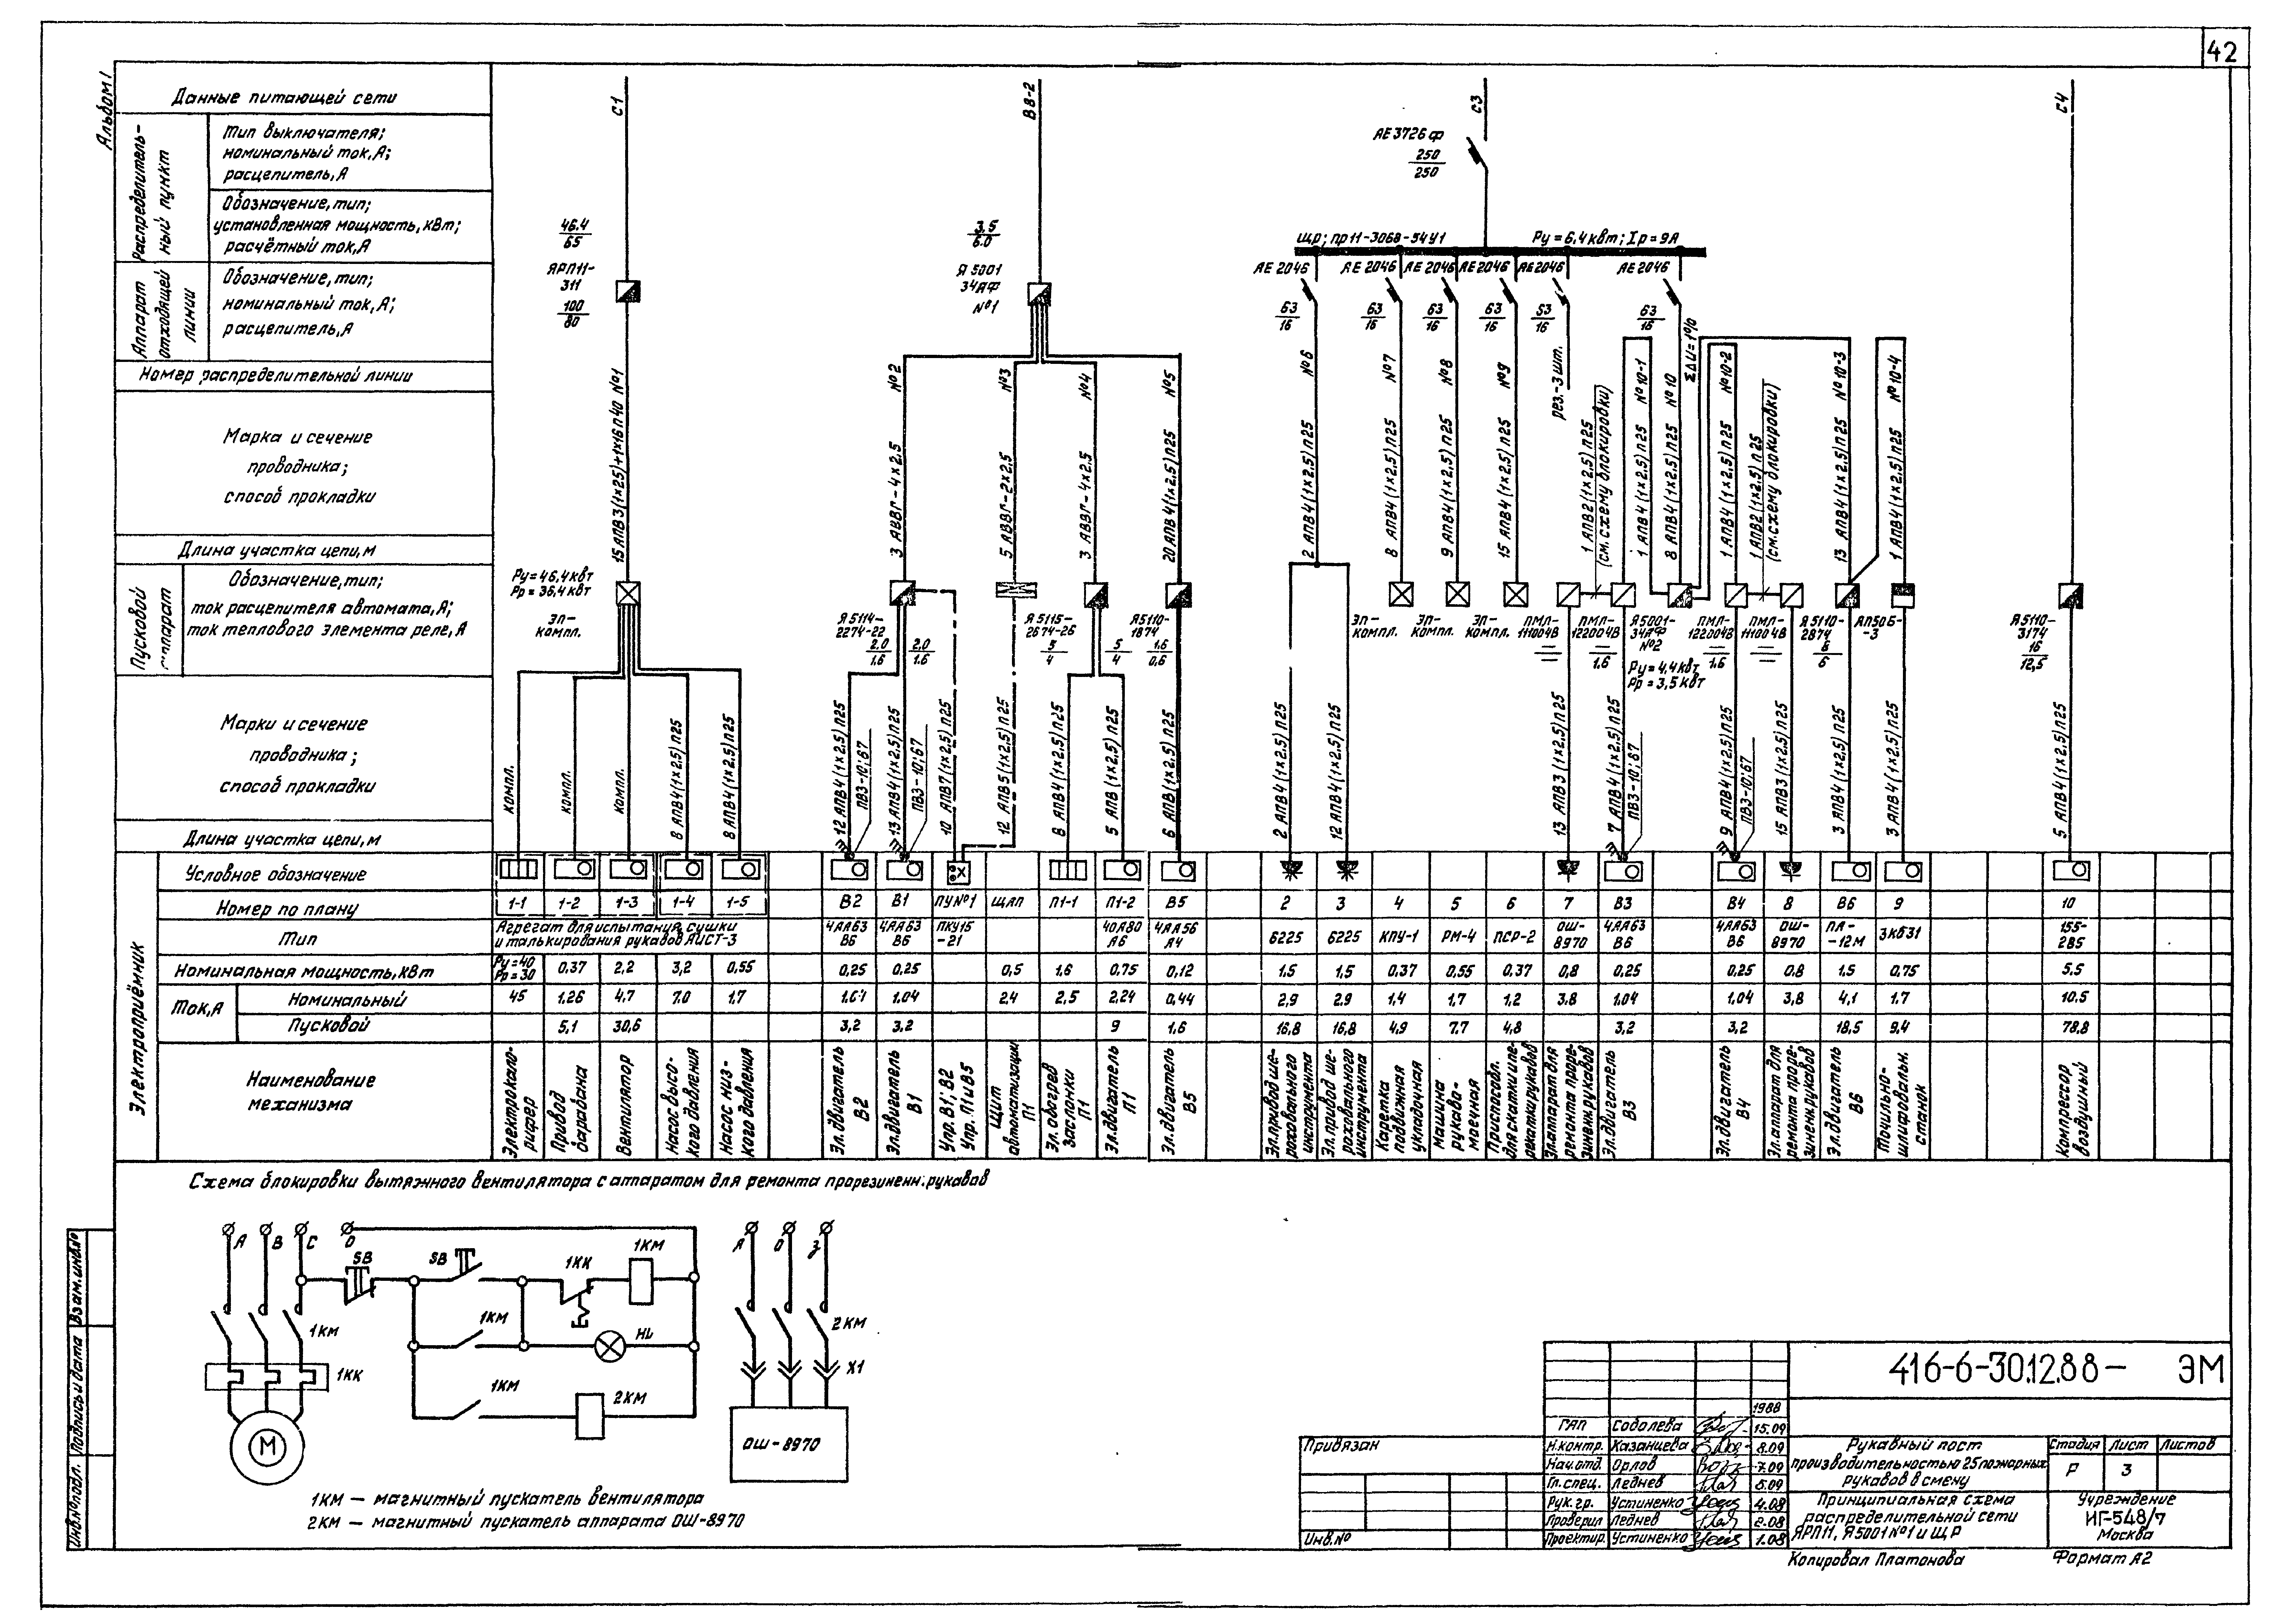 Типовой проект 416-6-30.12.88